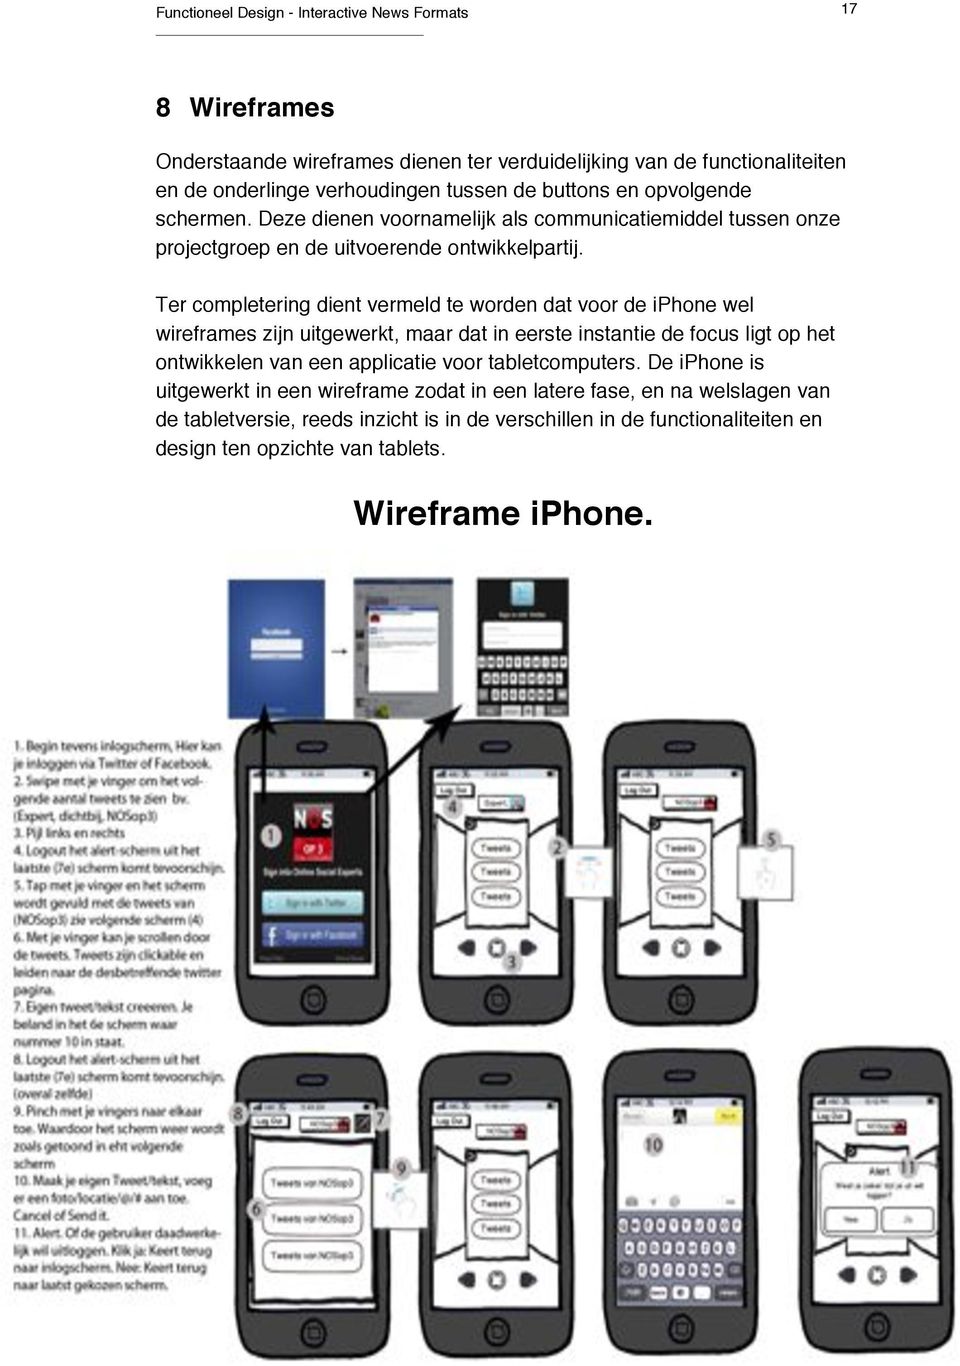 Ter completering dient vermeld te worden dat voor de iphone wel wireframes zijn uitgewerkt, maar dat in eerste instantie de focus ligt op het ontwikkelen van een applicatie voor